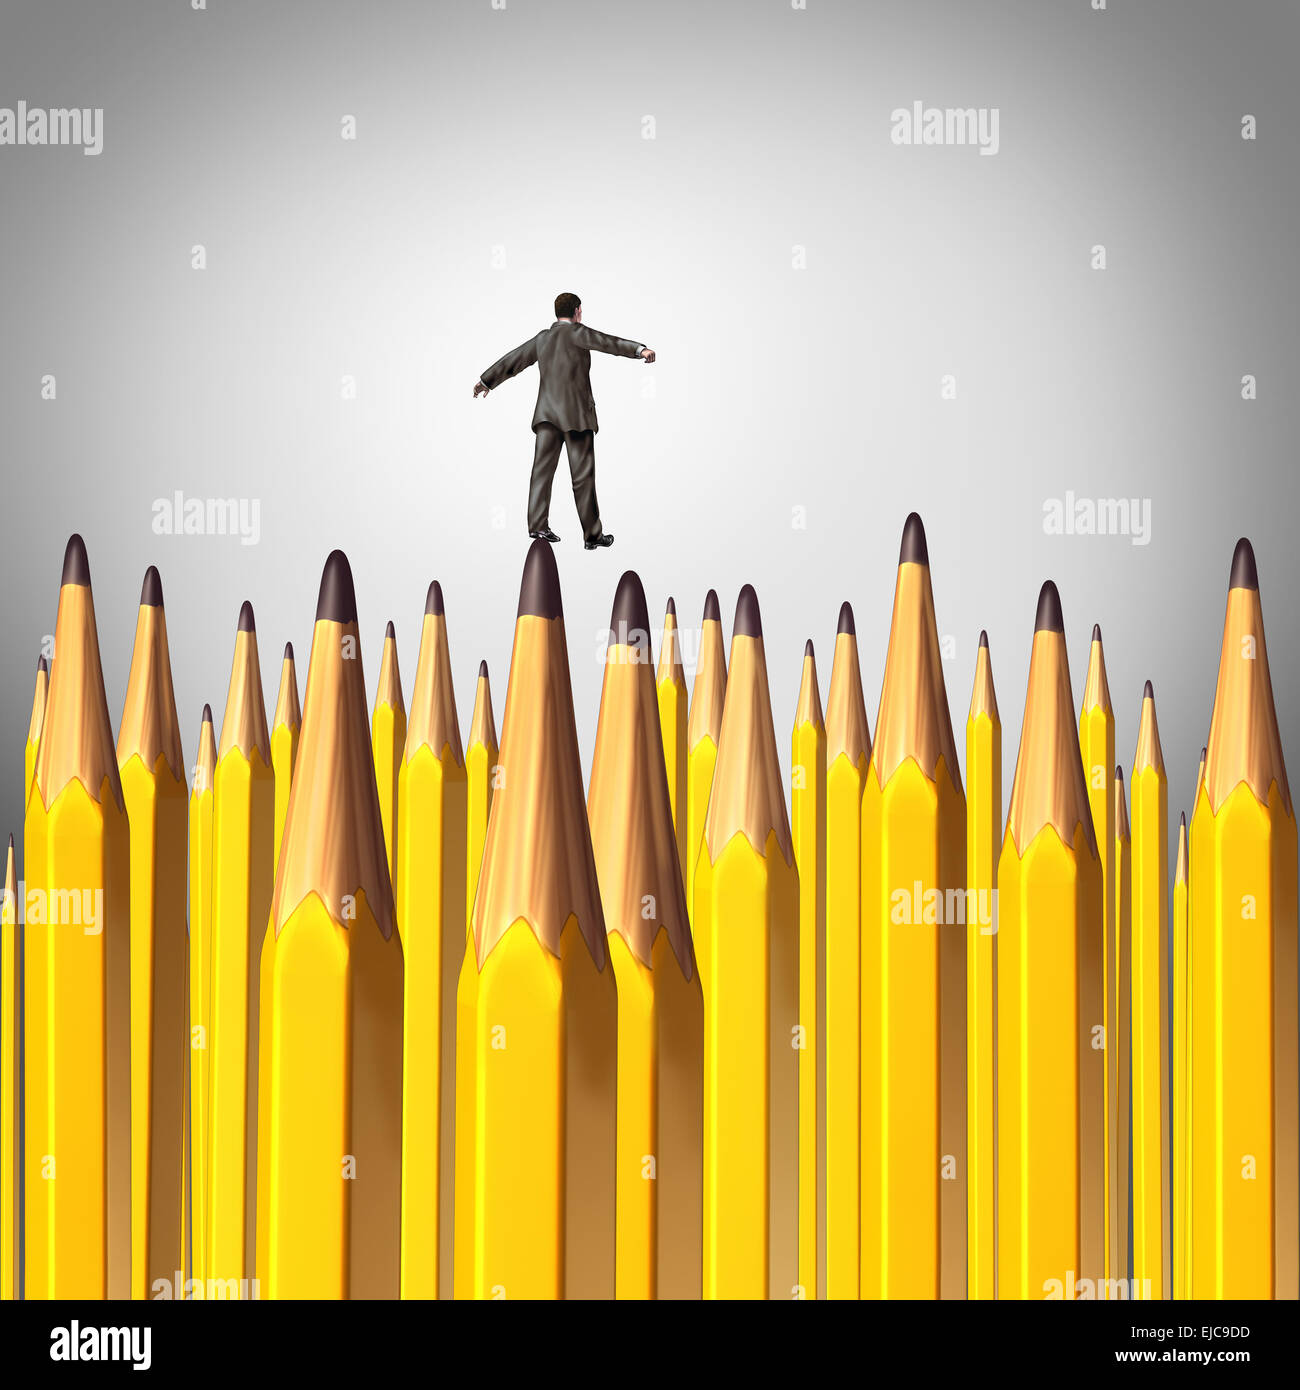 Kreative Entscheidung-Risk-Konzept als eine Person zu Fuß vorsichtig durch einen Hintergrund mit einer Gruppe von geschärfte Spitze Bleistifte Stockfoto